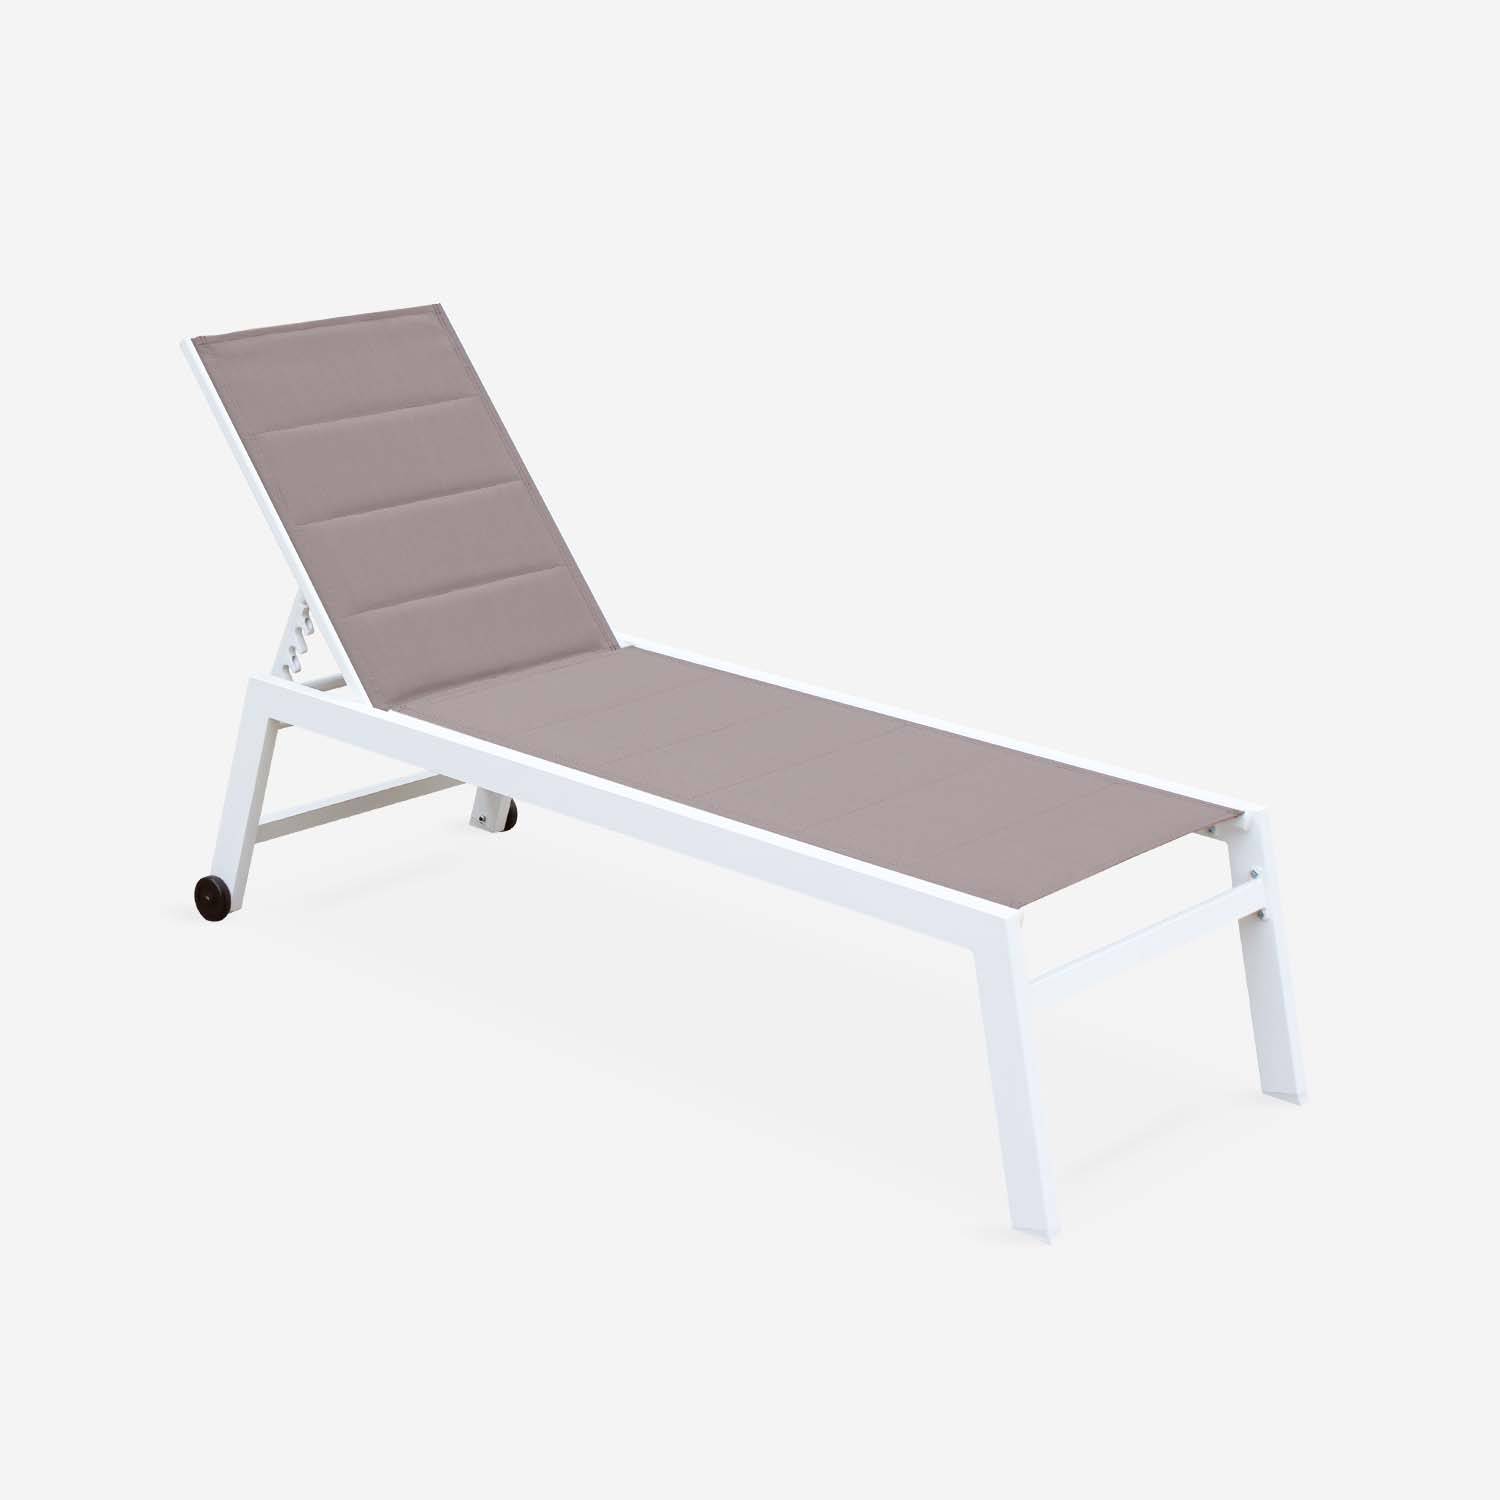 Sonnenliege - Solis - Liegestuhl aus gestepptem Textilene mit 6 Positionen aus Textilene und Aluminium, weißes Gestell, taupefarbenes Textilene Photo1